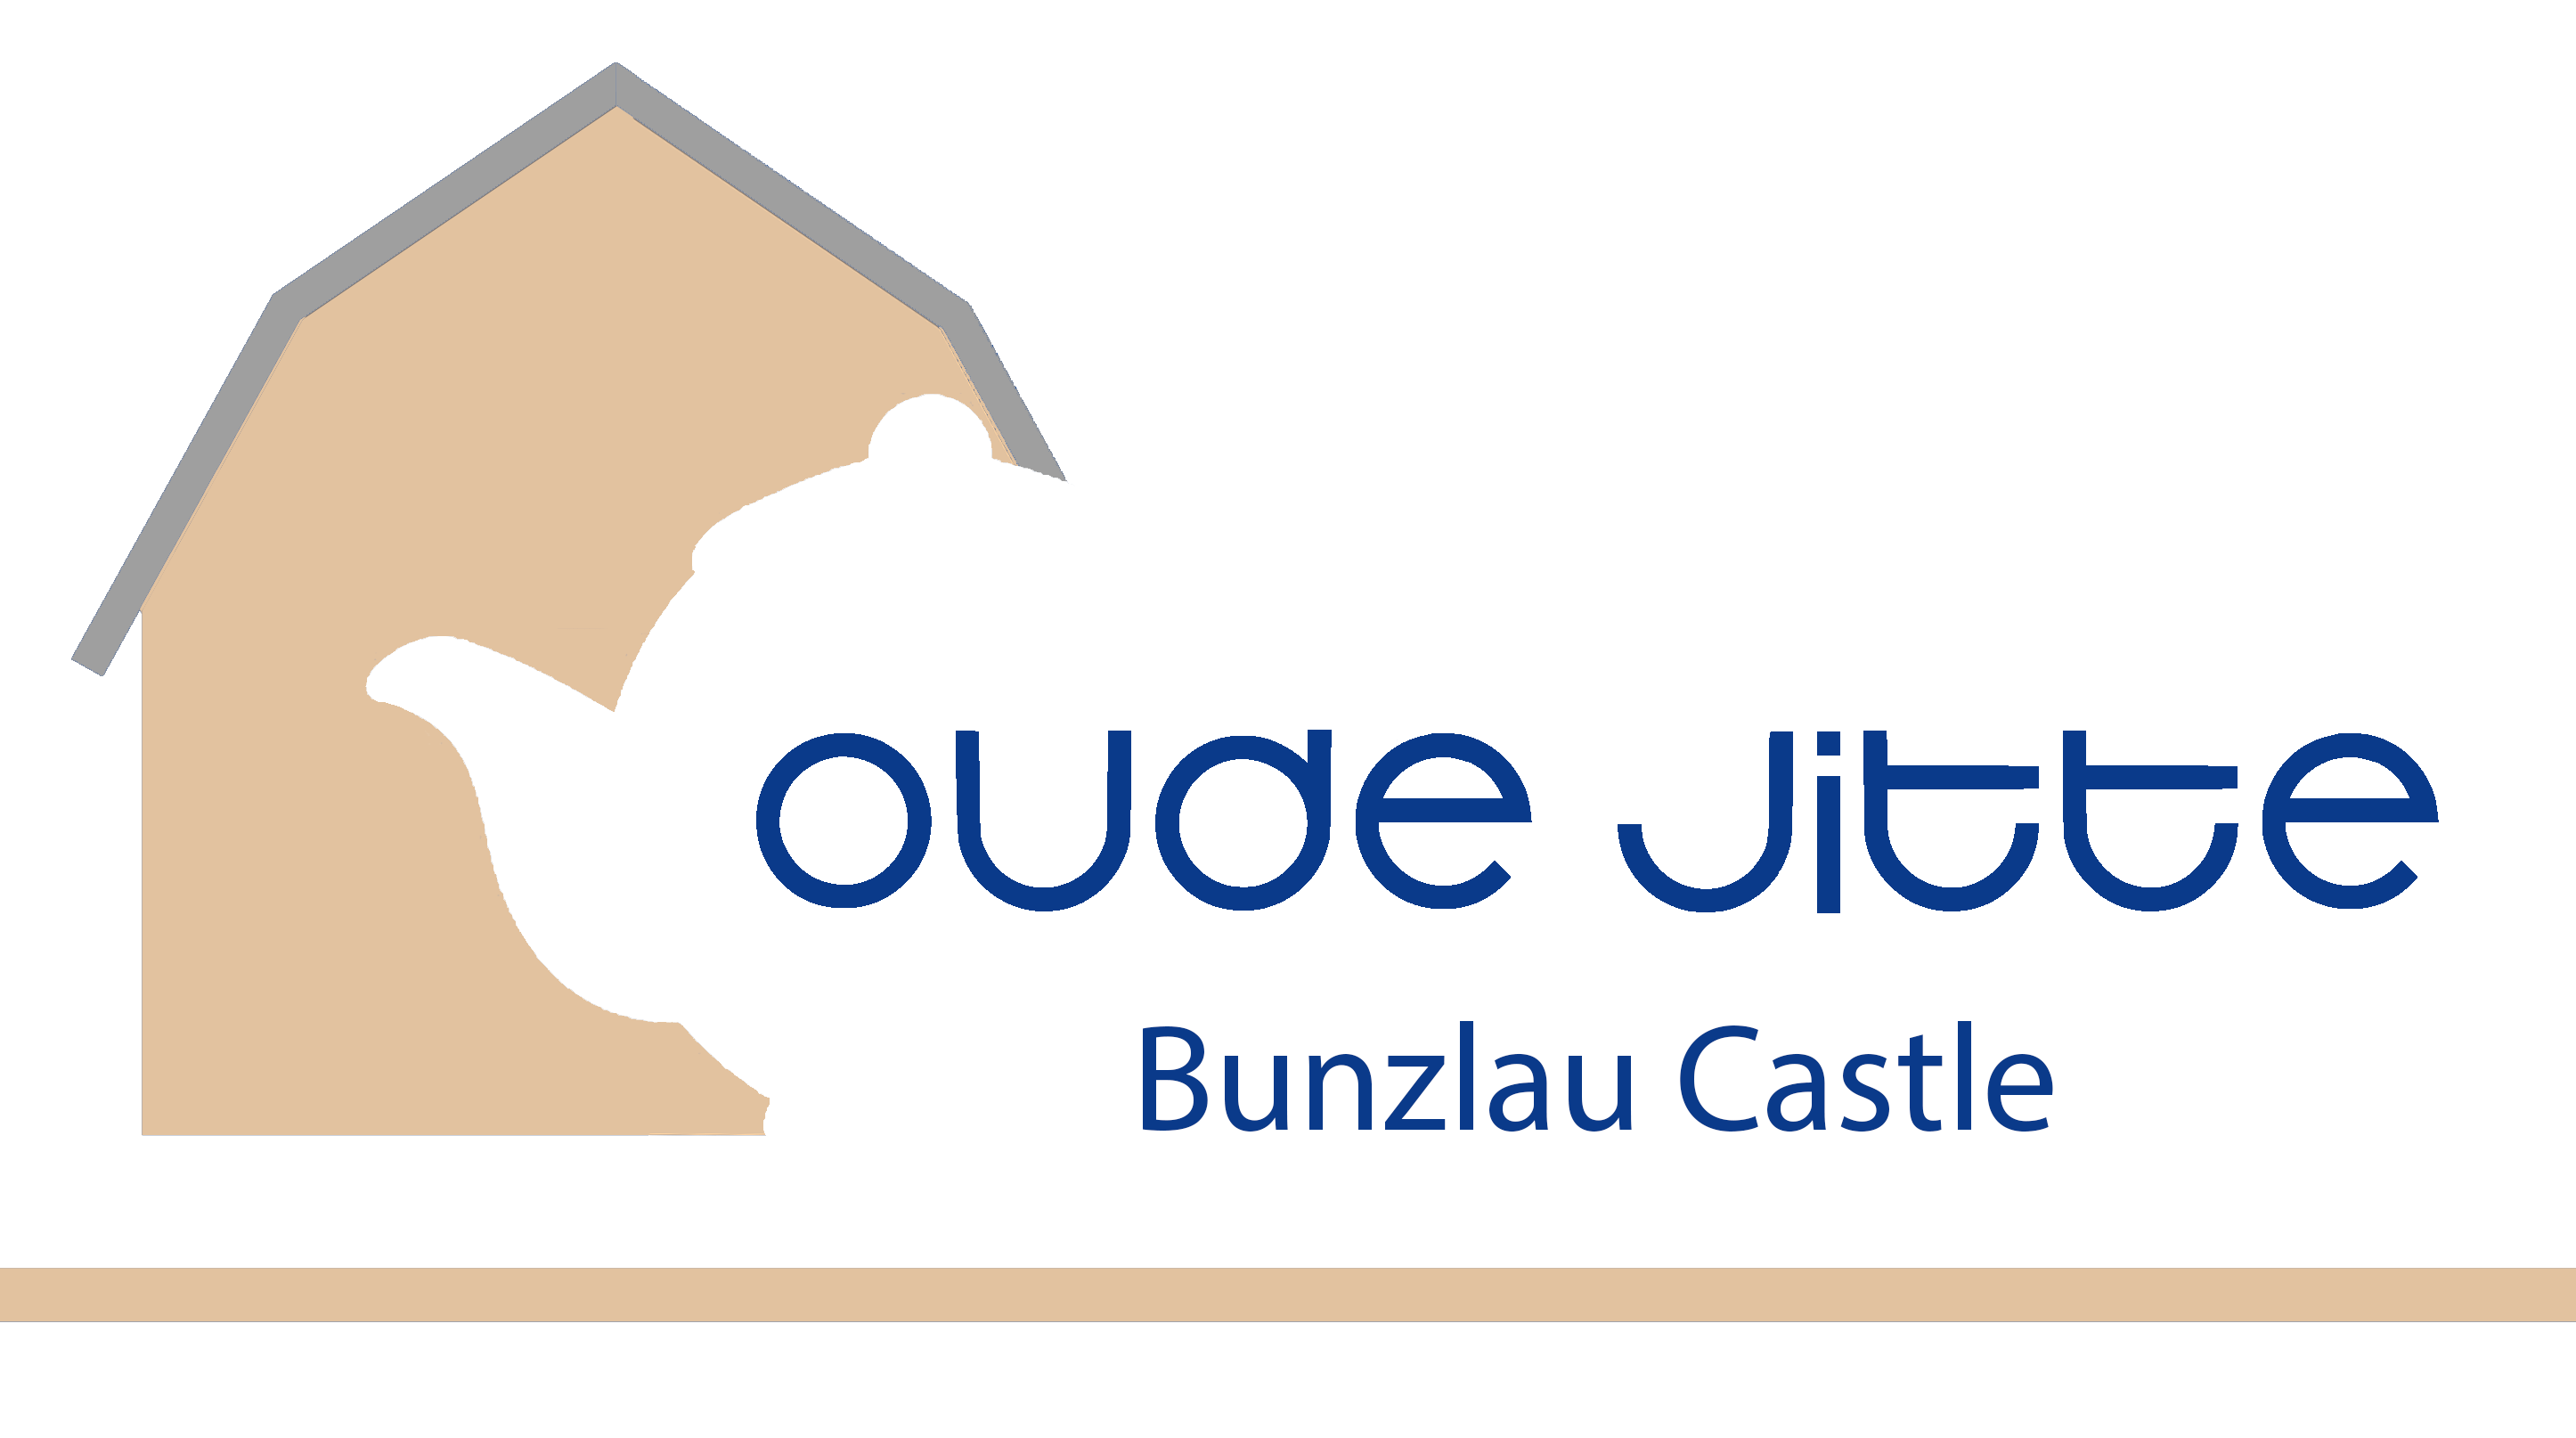 Bunzlau Castle Servies